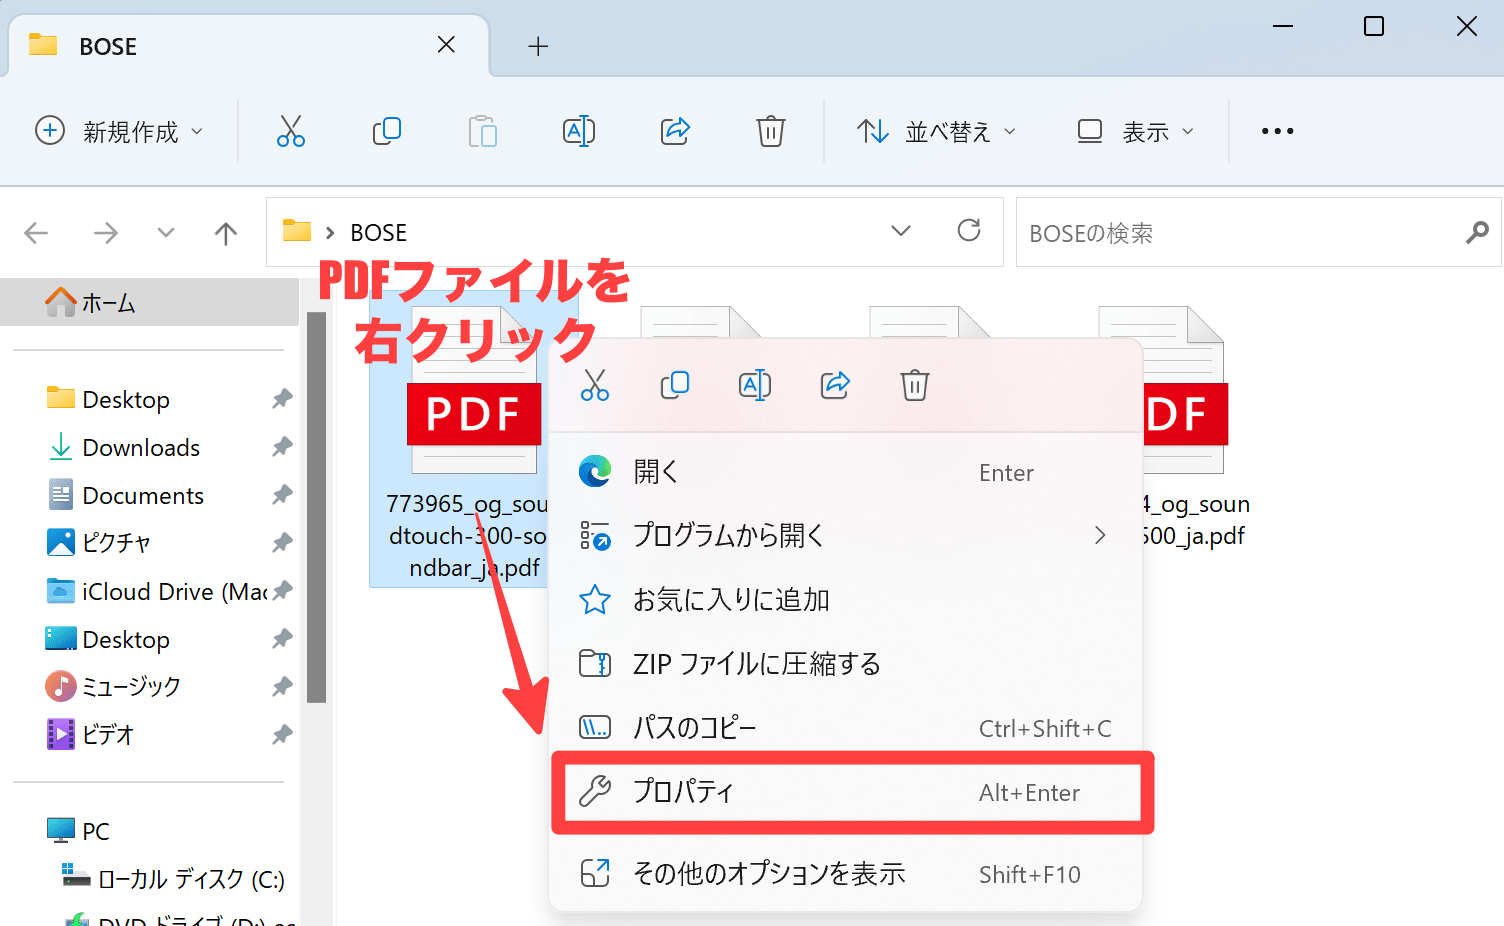 PDFファイルを右クリックしてプロパティを選択